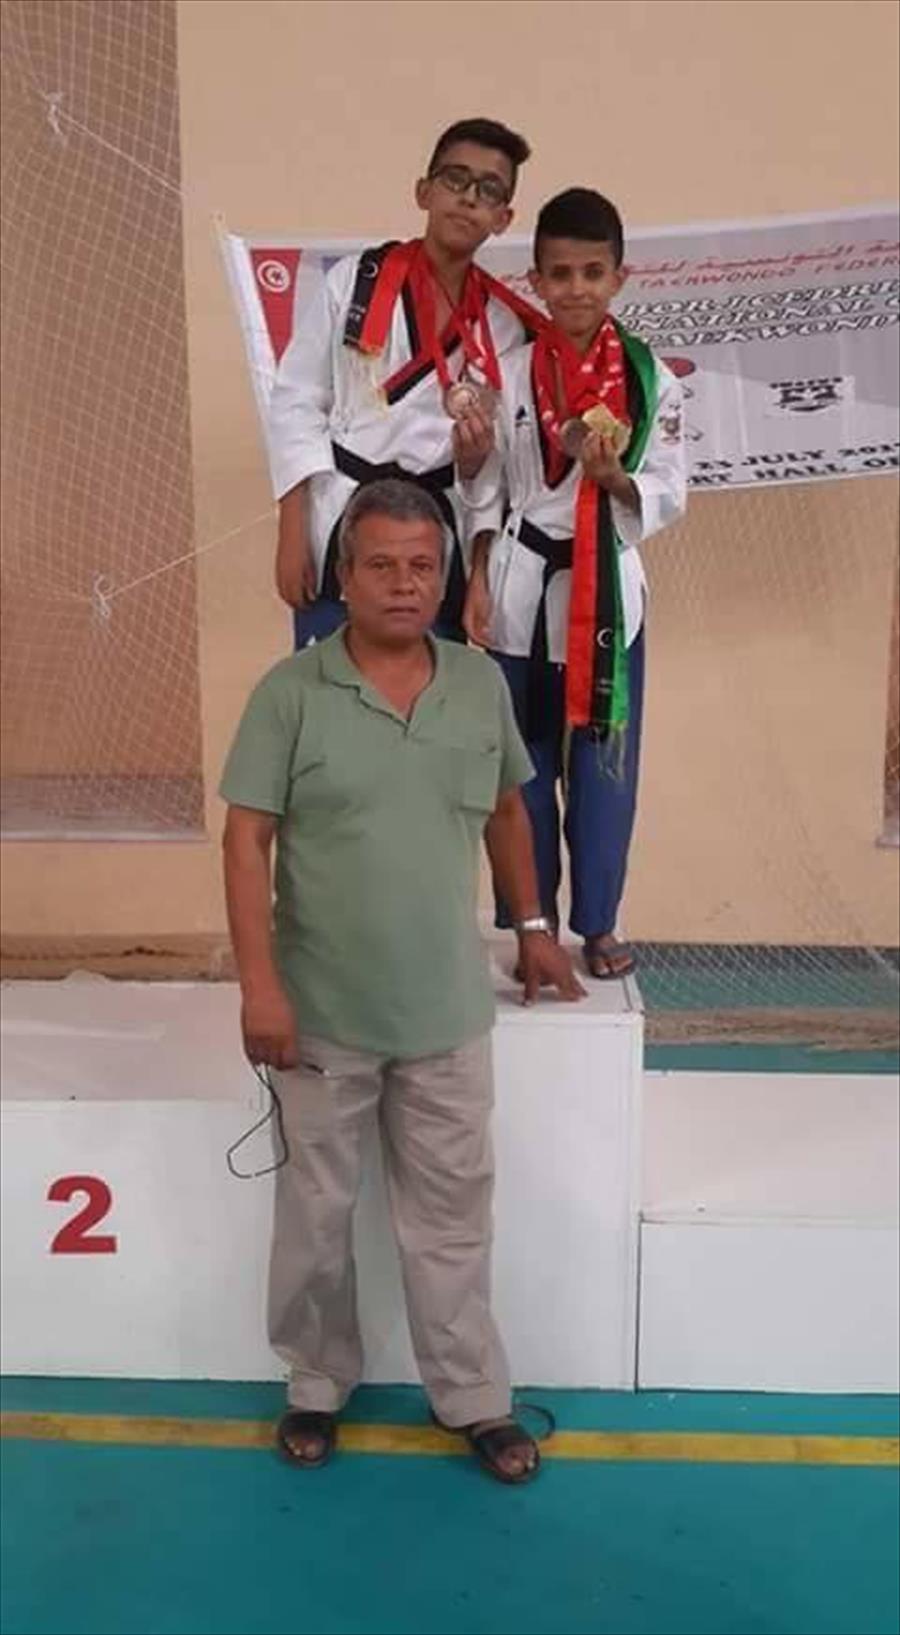 التايكوندو الليبي يحصد 12 ميدالية من 5 دول عربية